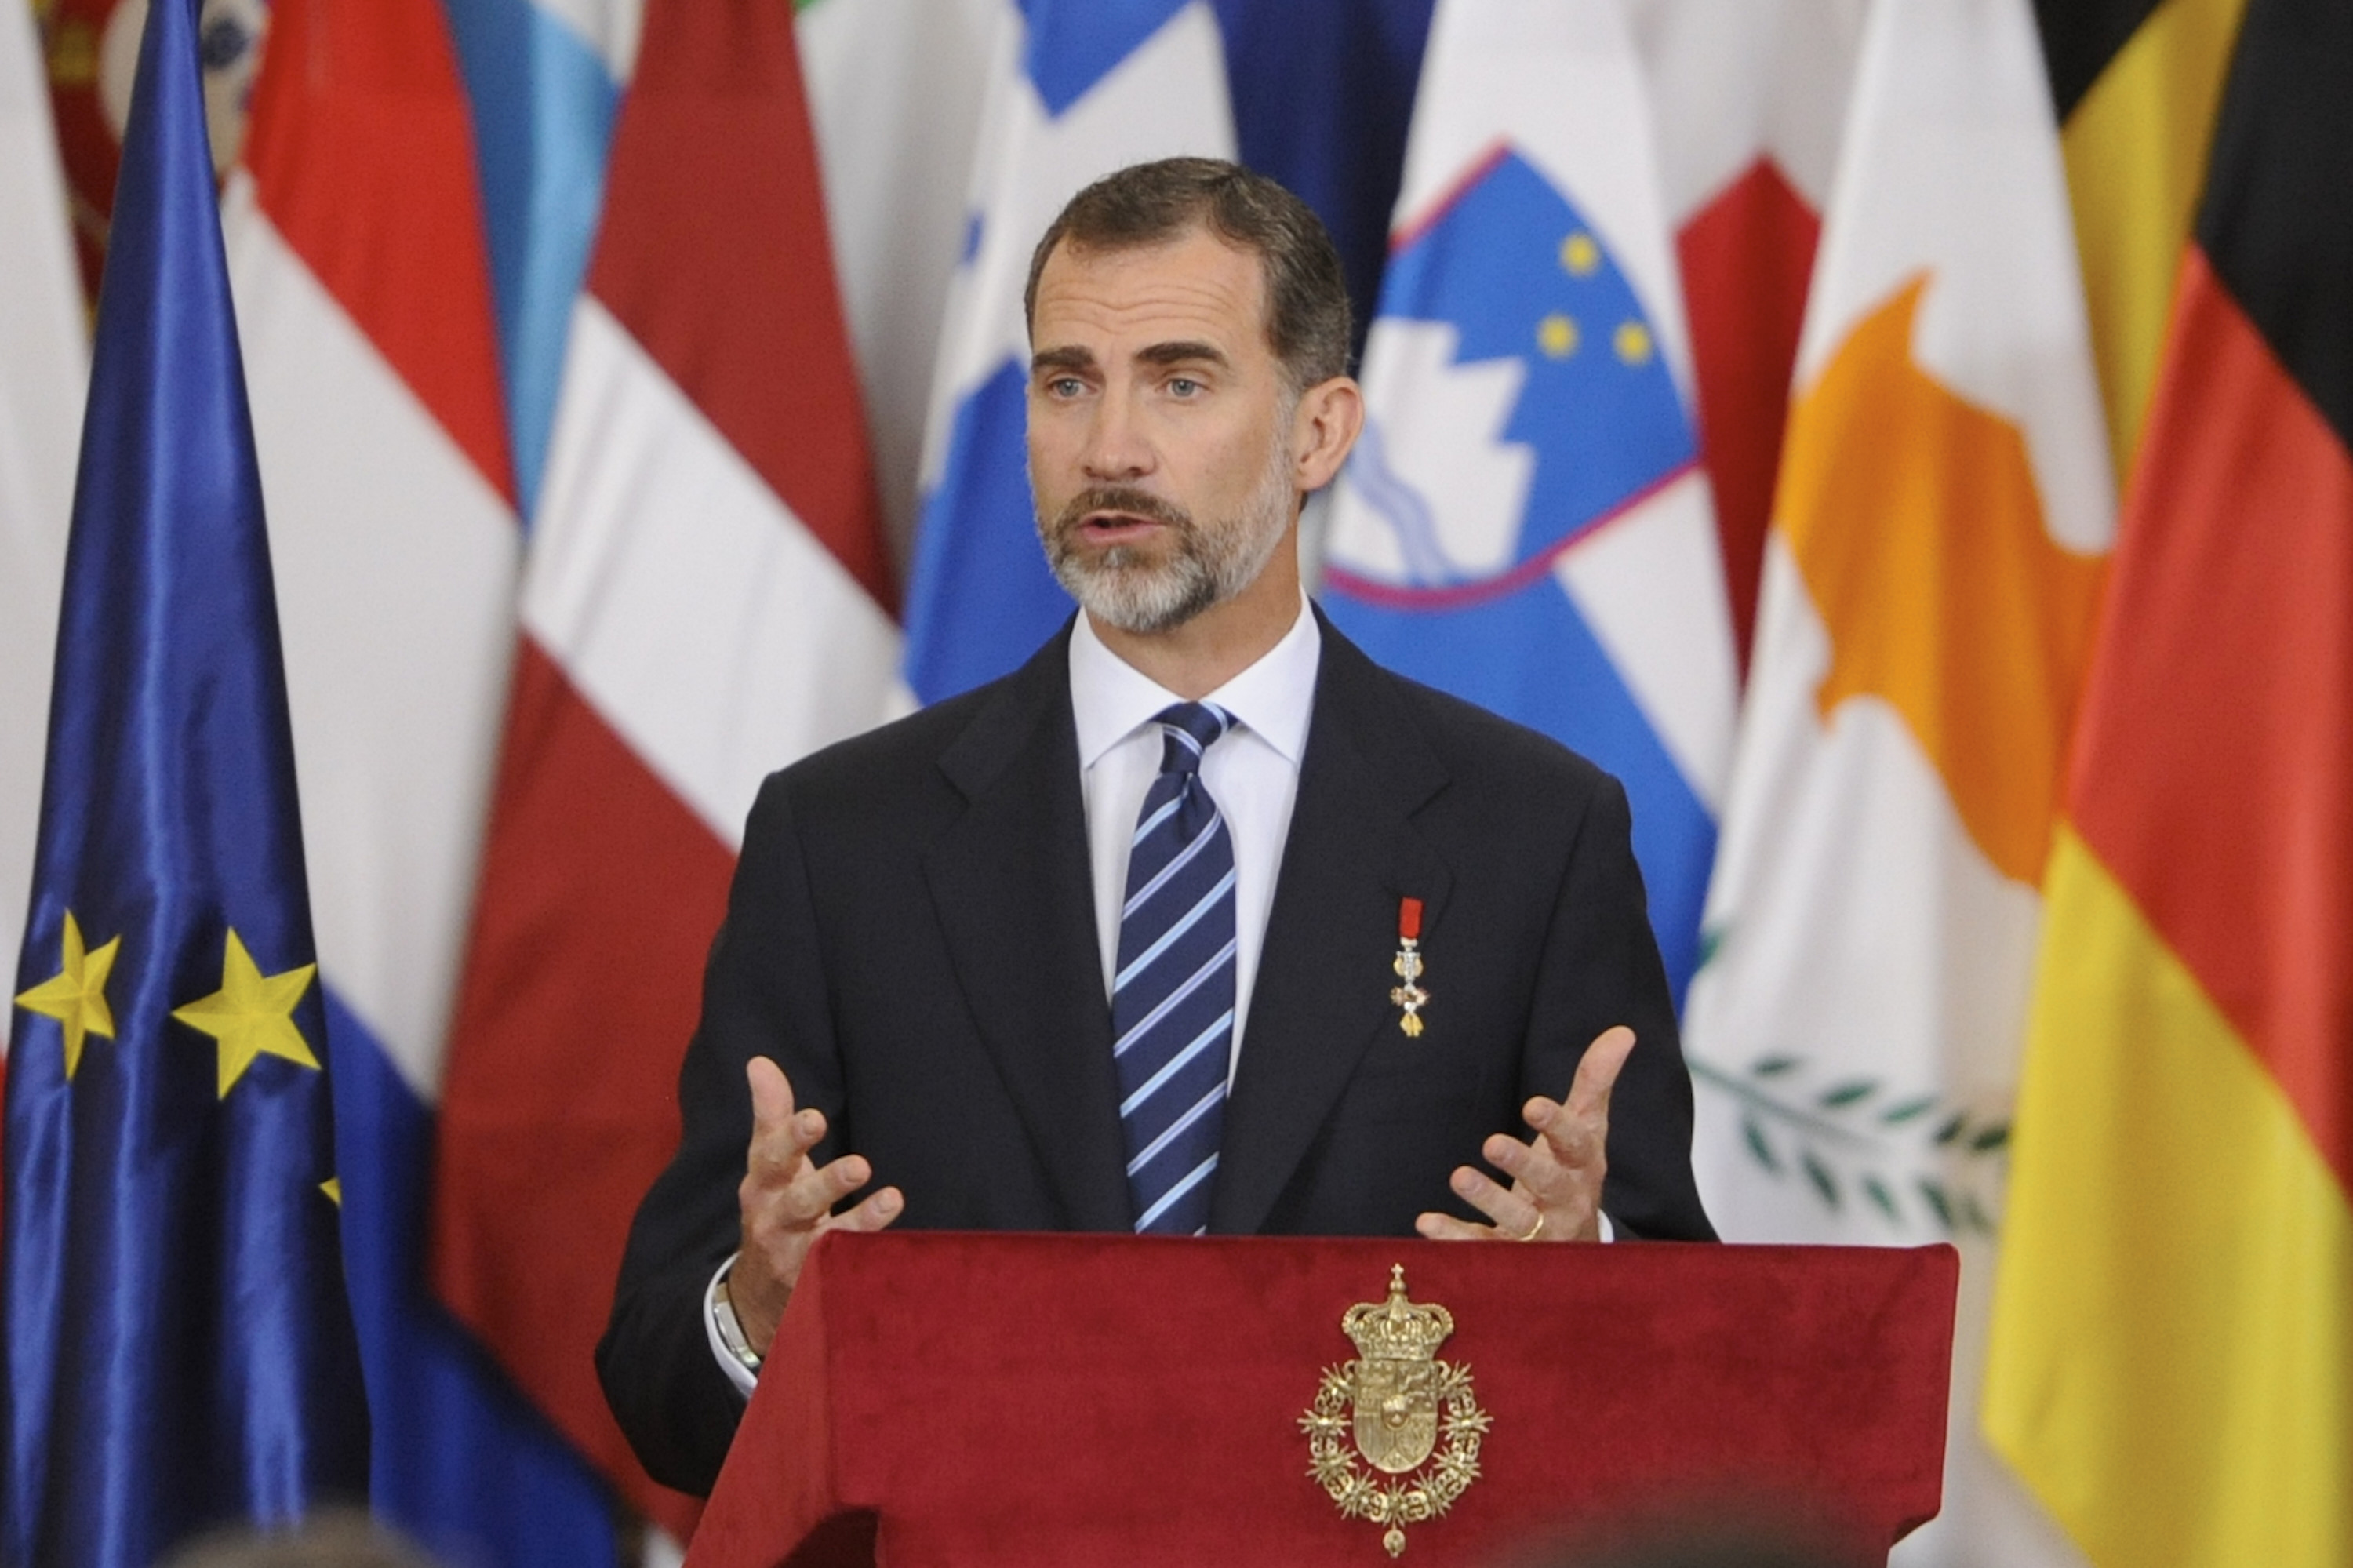 Крал Фелипе VІ: Каталуния е важна част от съвременна Испания